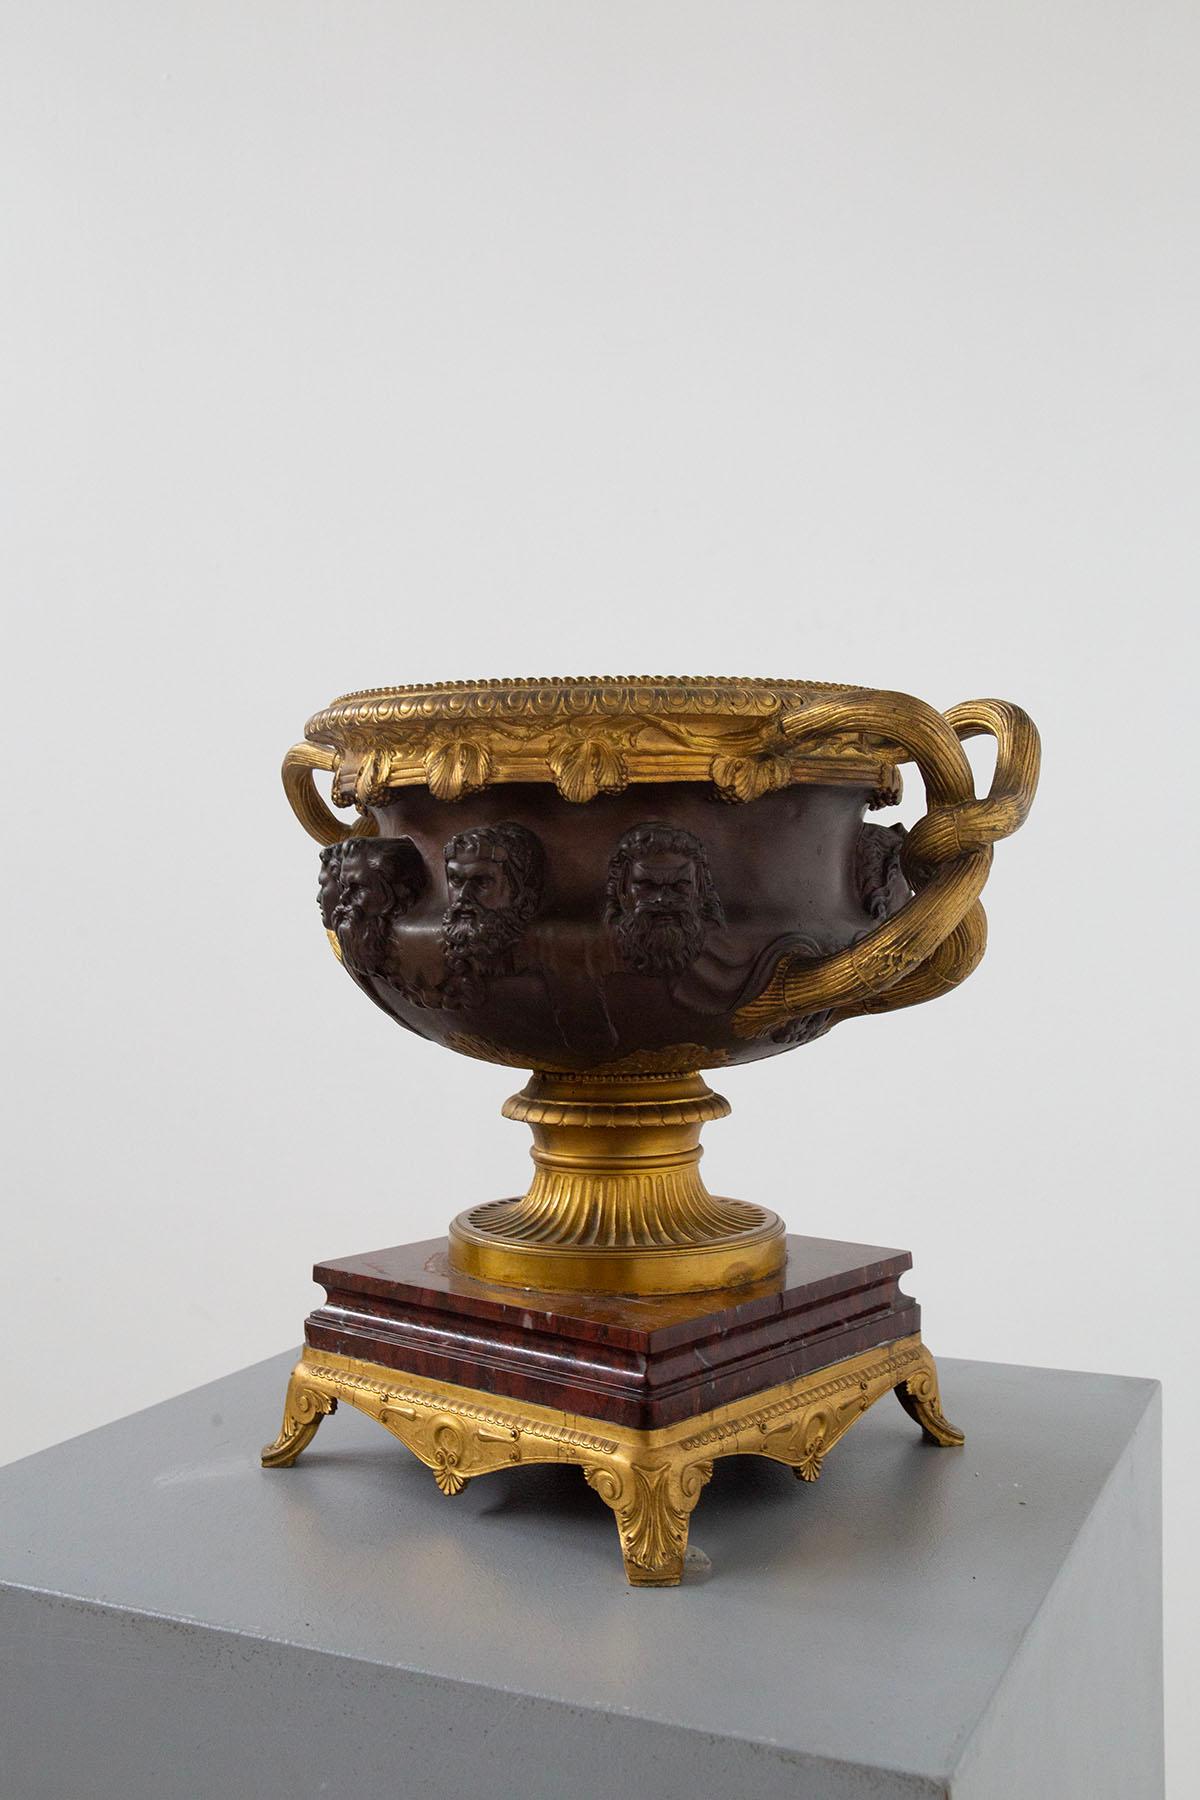 La tasse décrite est une belle pièce de Ferdinand Barbedienne, un célèbre sculpteur et fondeur de bronze français qui a vécu entre 1810 et 1892. Créée vers 1860 et connue sous le nom de coupe 